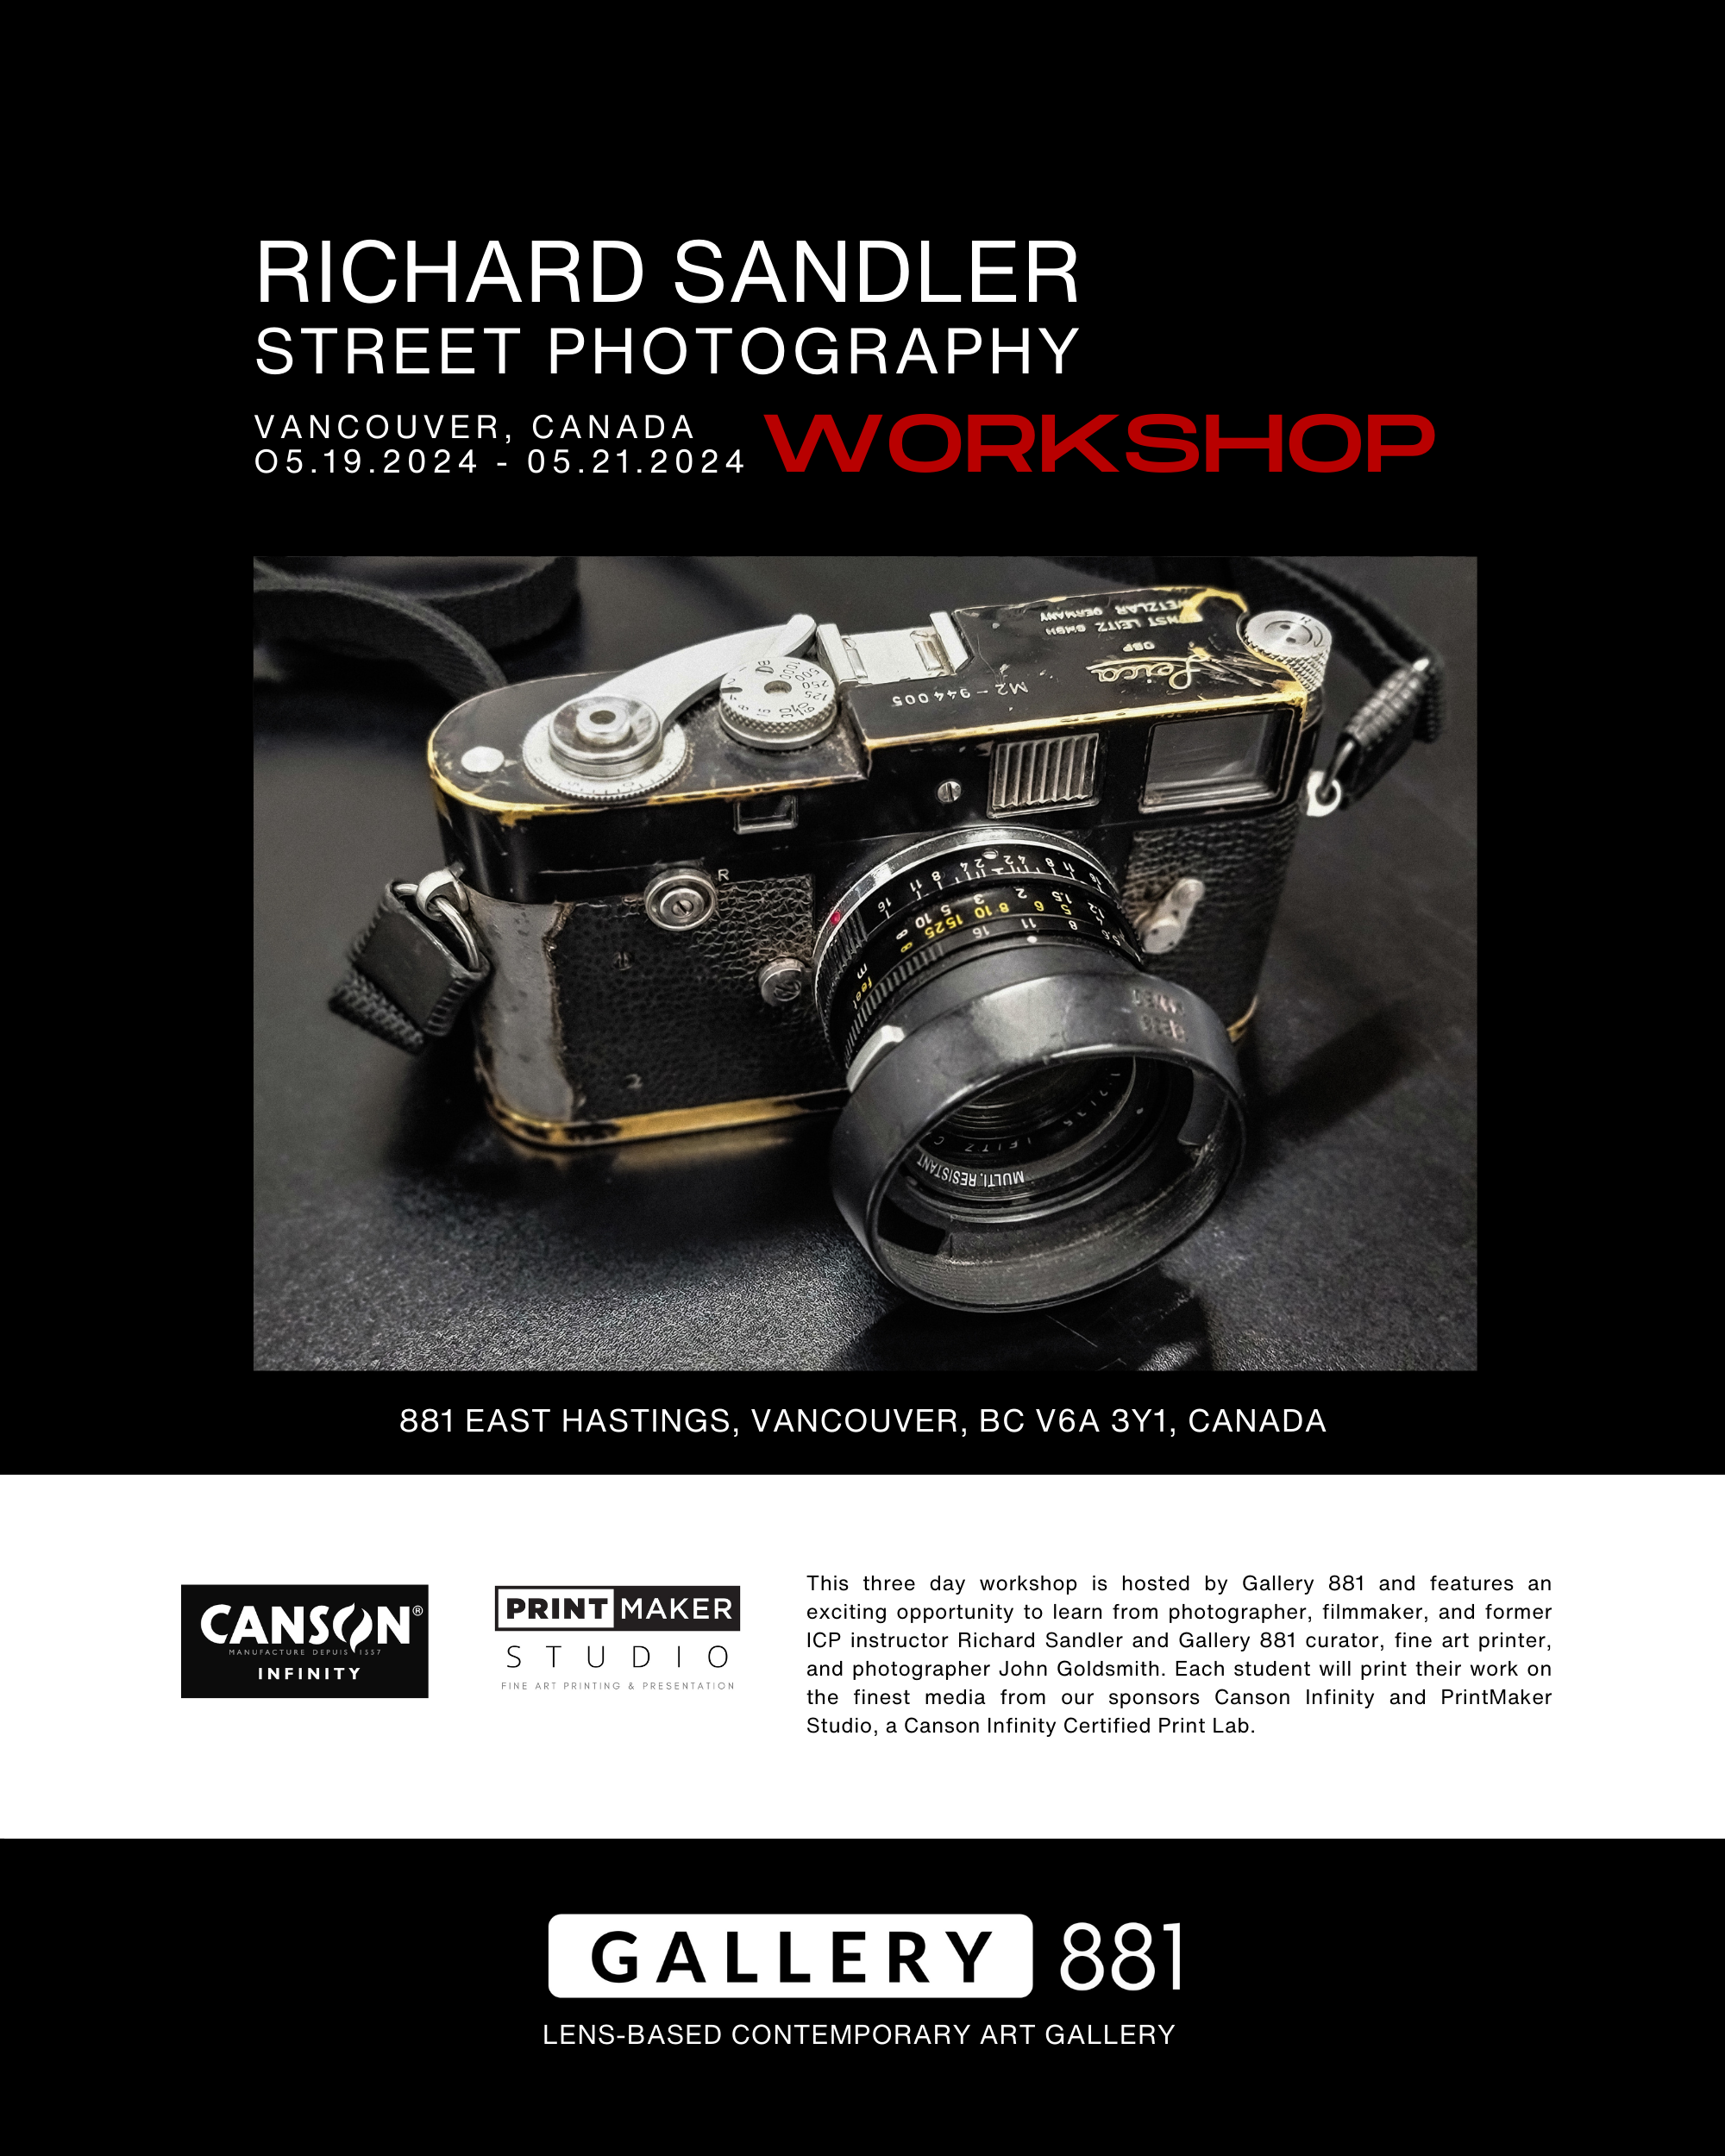 Gallery-881-Richard-Sandler-Workshop-8.png